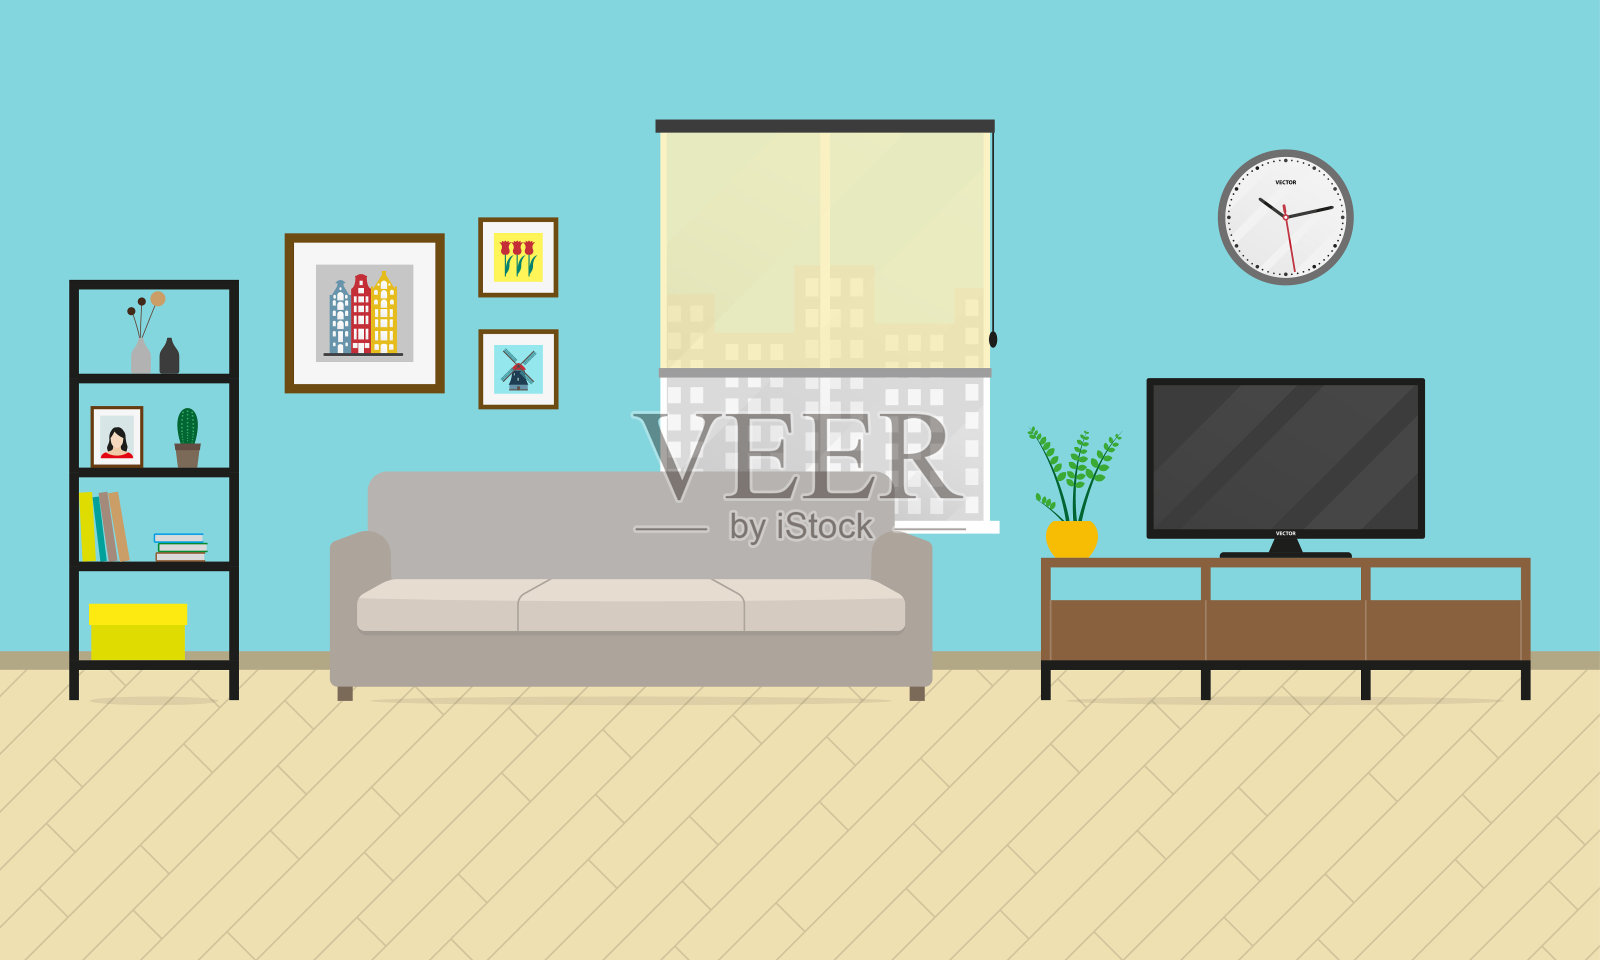 客厅内。平板式家具，包括沙发、书柜、电视等。矢量插图。插画图片素材